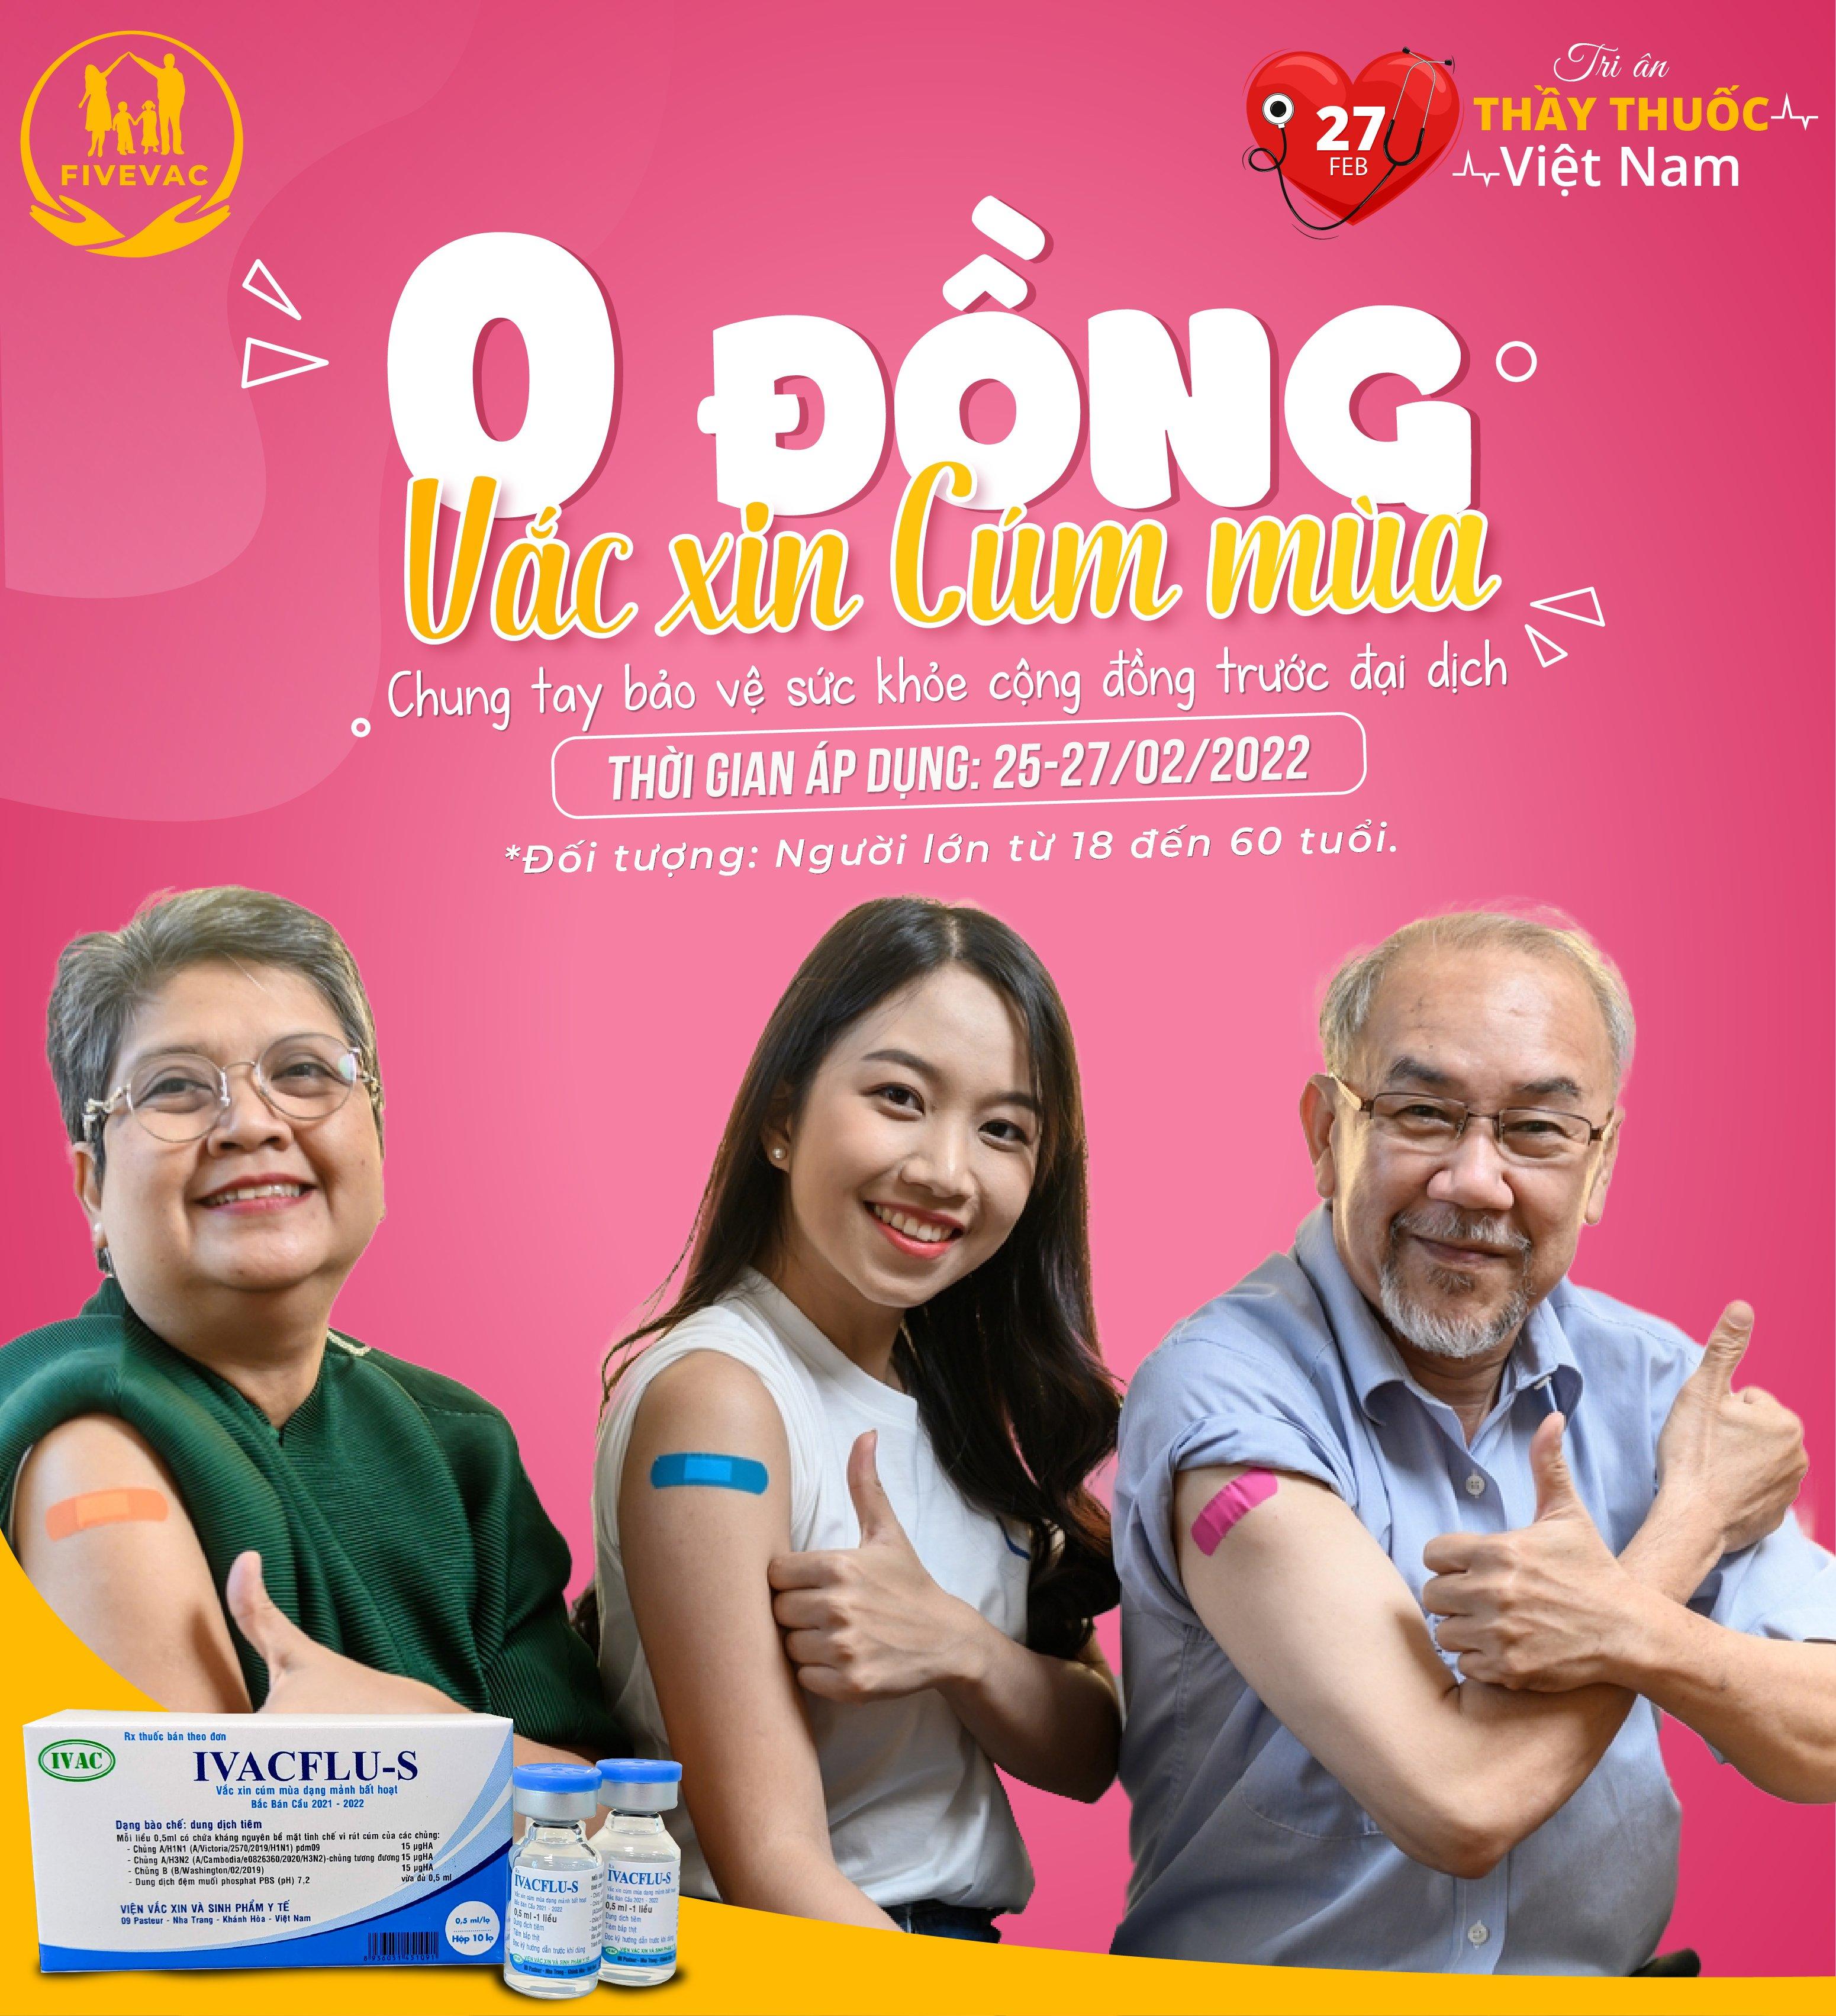 Chương Trình Tiêm Vắc Xin Cúm Mùa Giá 0 Đồng Tri Ân Ngày Thầy Thuốc Việt Nam